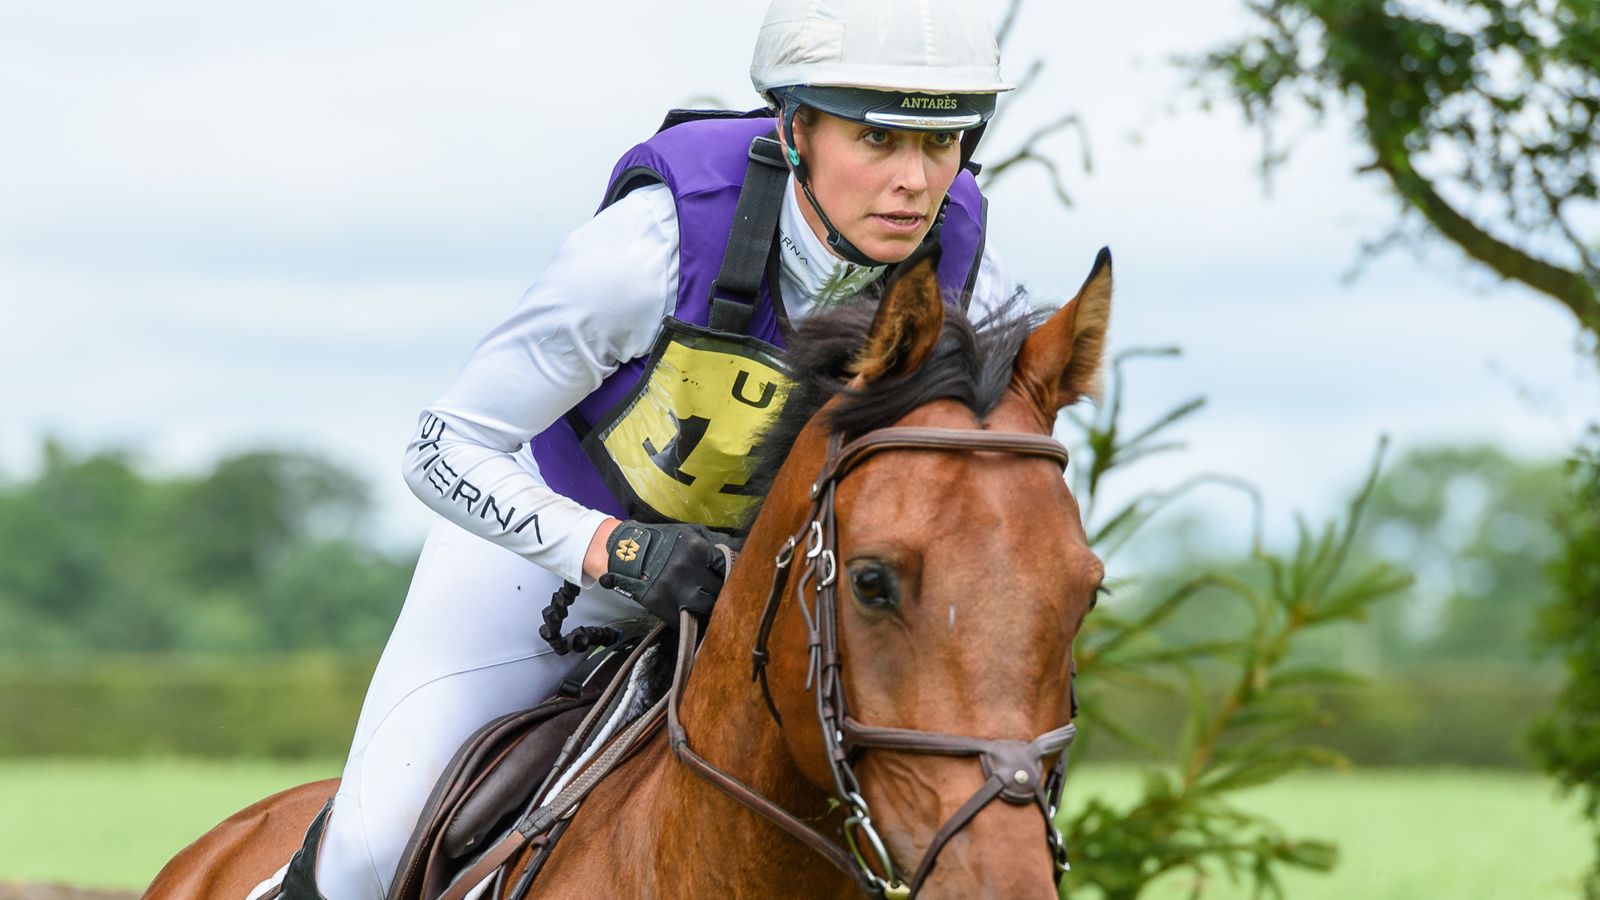 Джорджи Кембъл: Съпругът отдава почит на „феноменалния“ британски конен ездач, който загина по време на състезание по конен спорт